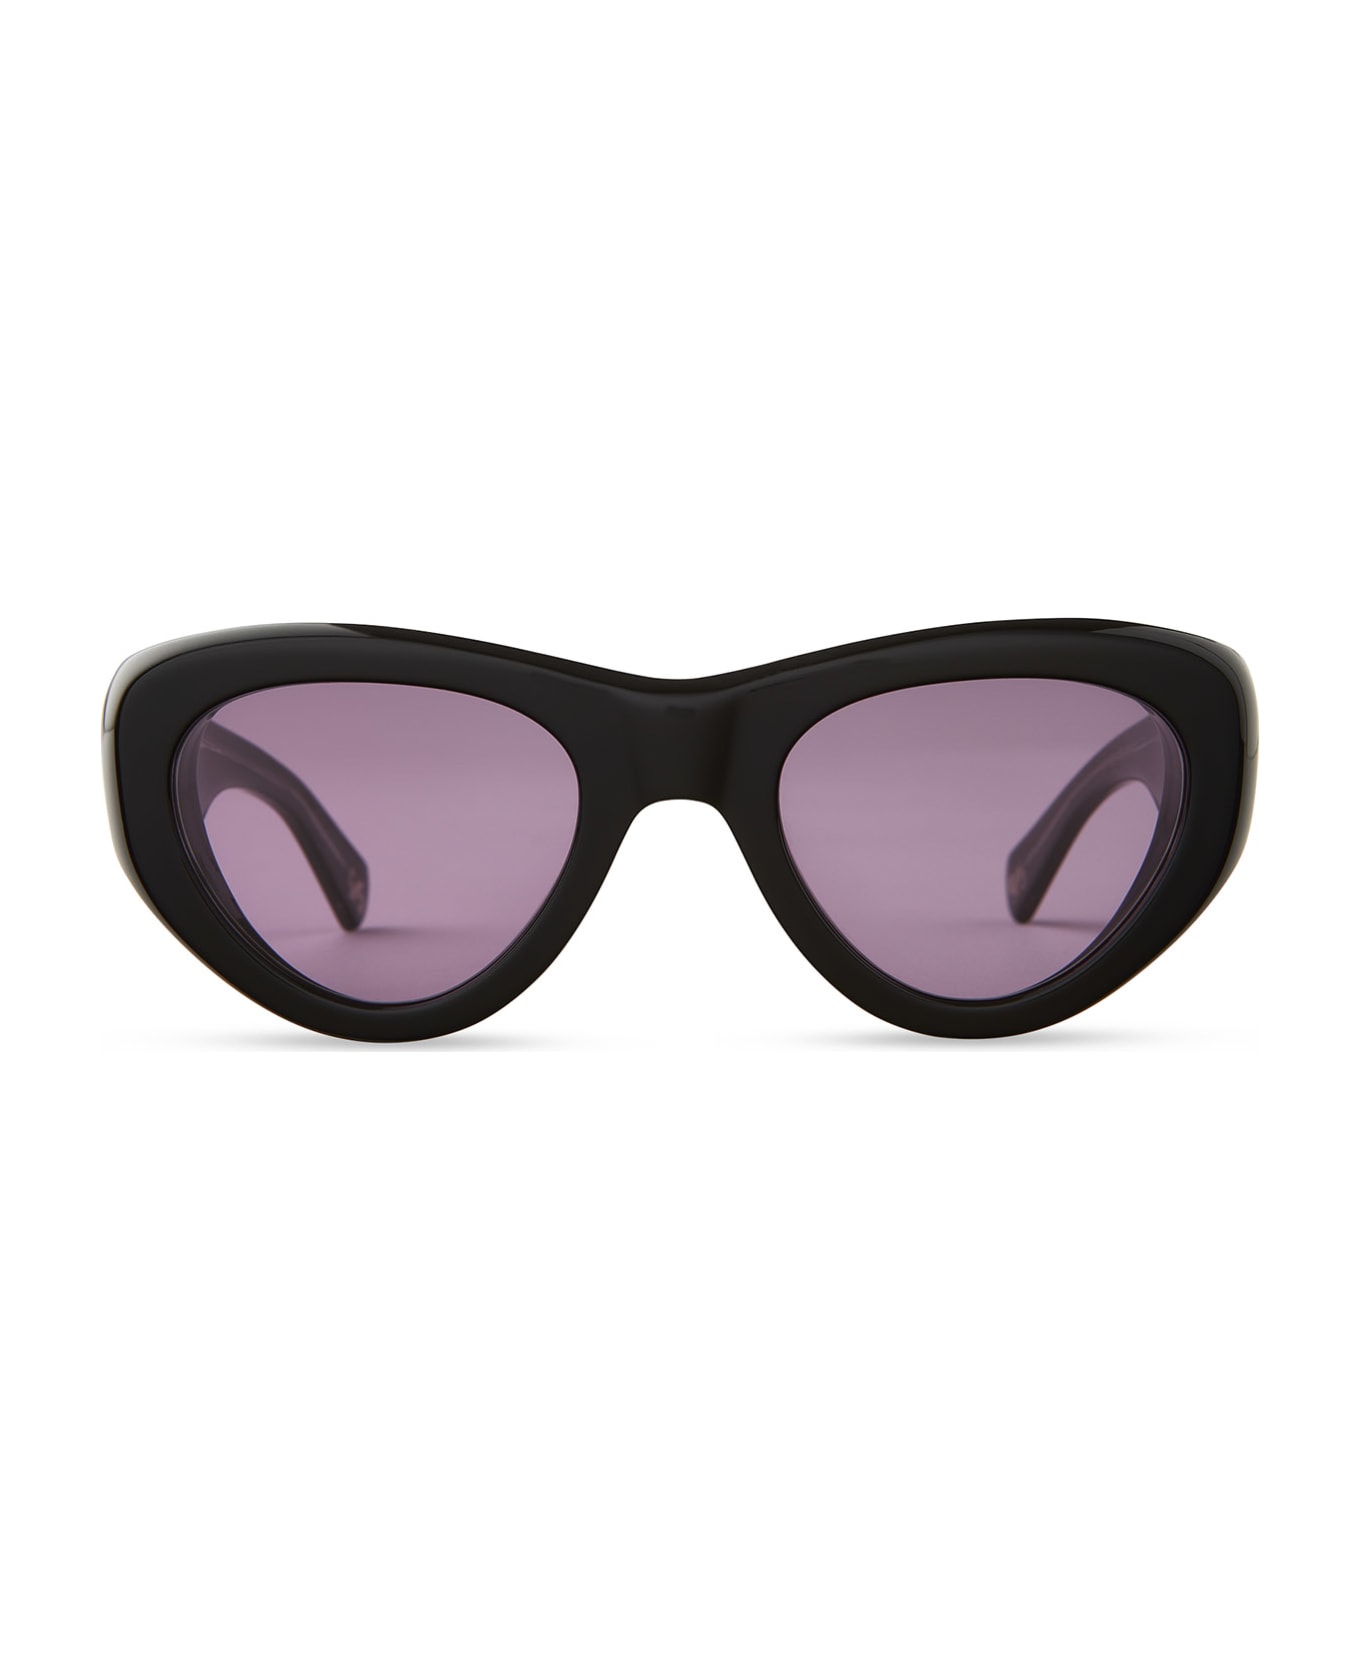 Mr. Leight Reveler S Black-pewter Sunglasses - Black-Pewter